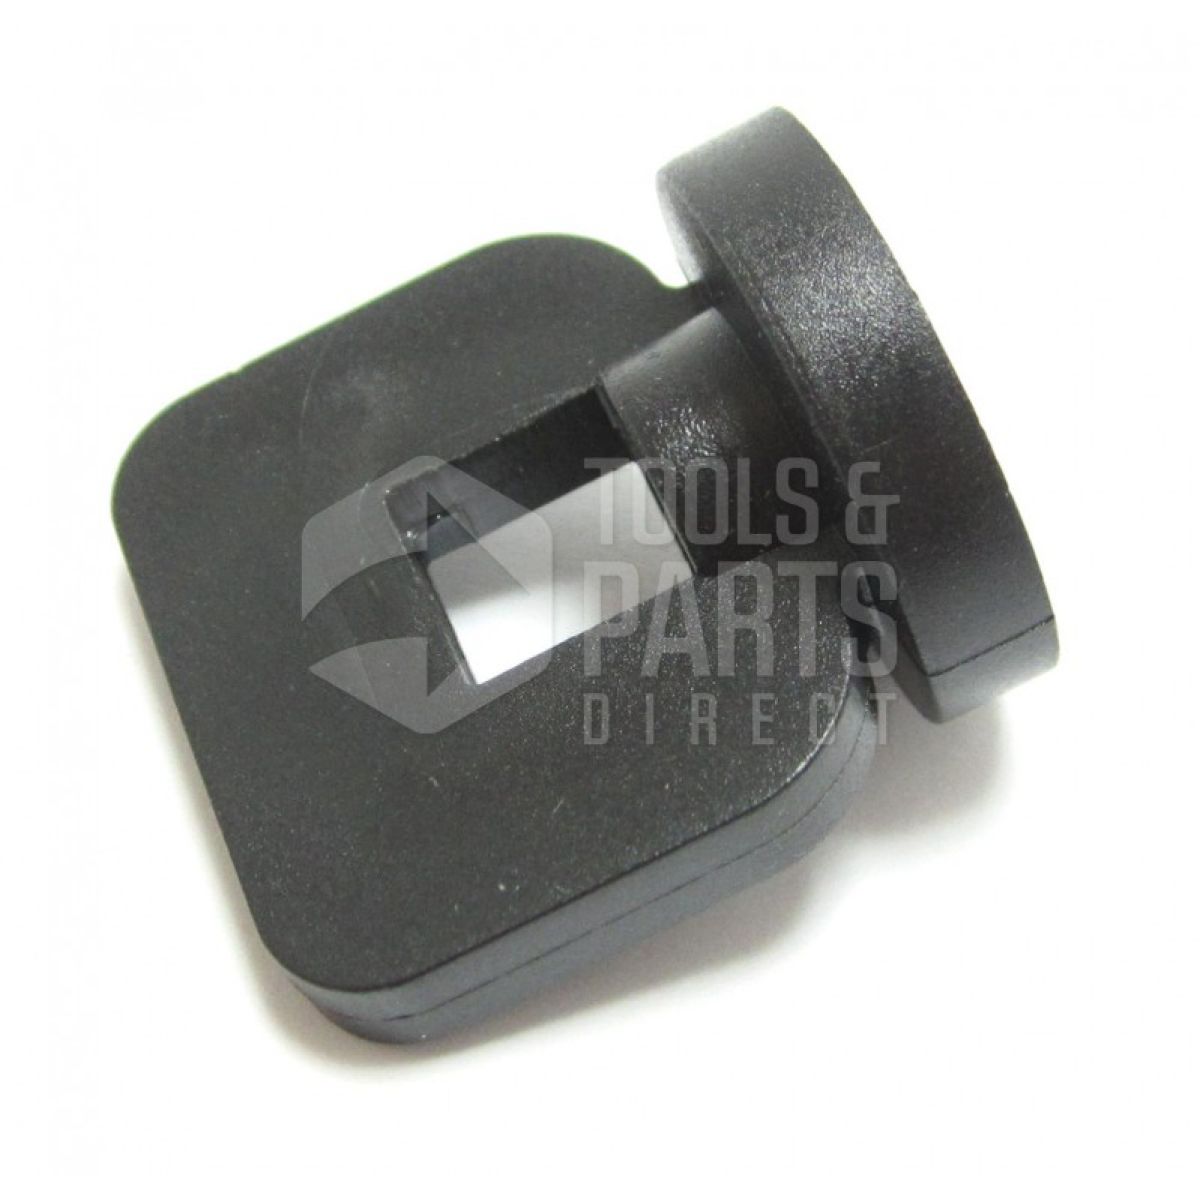 Black & Decker X40000 Type 1 Workmate Spare Parts - Part Shop Direct